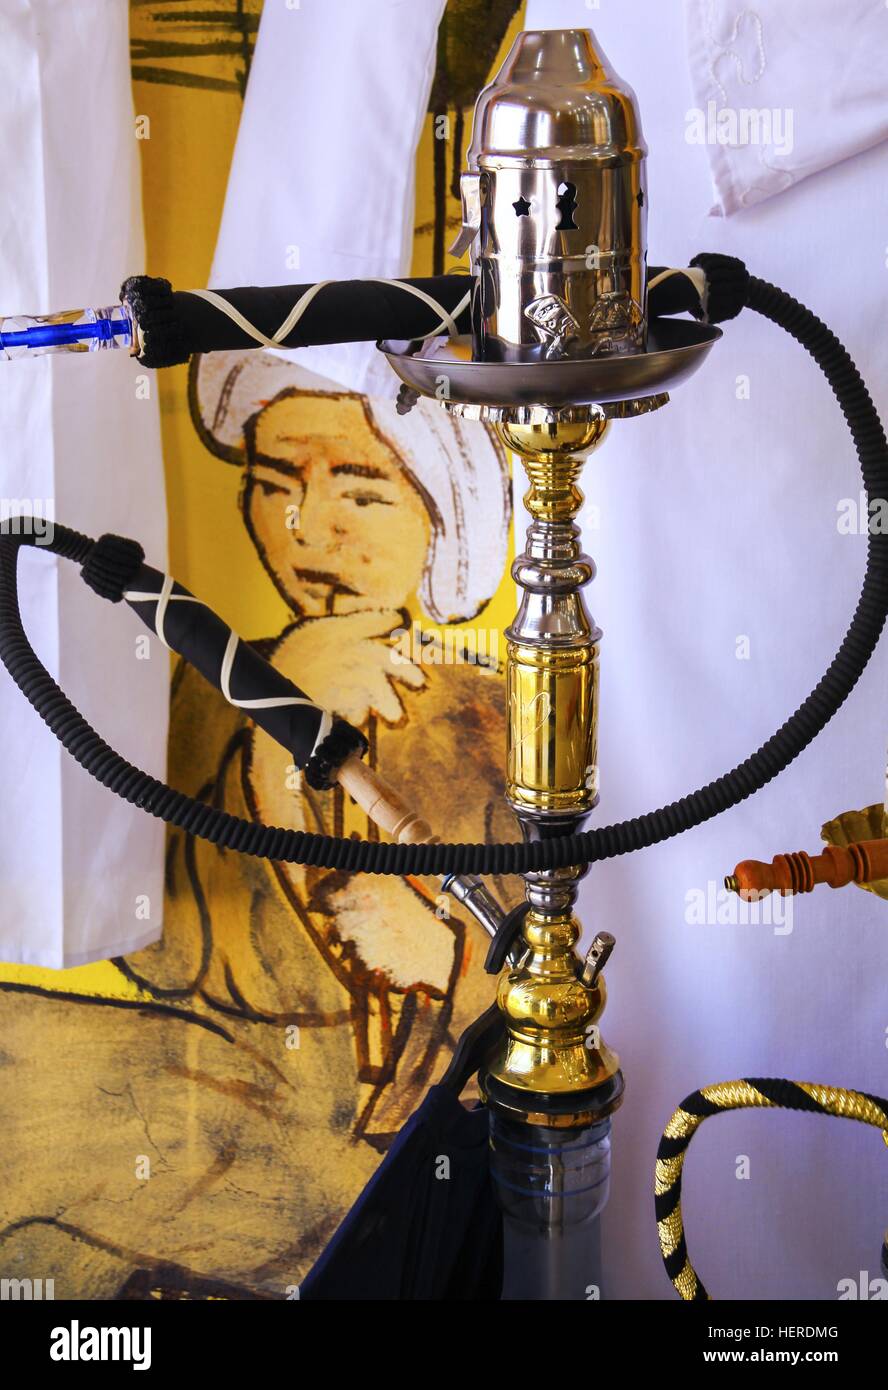 Vintage authentique narguilé pipe à eau artisanale boutique souvenirs pour touristes près de Louxor en Égypte Banque D'Images